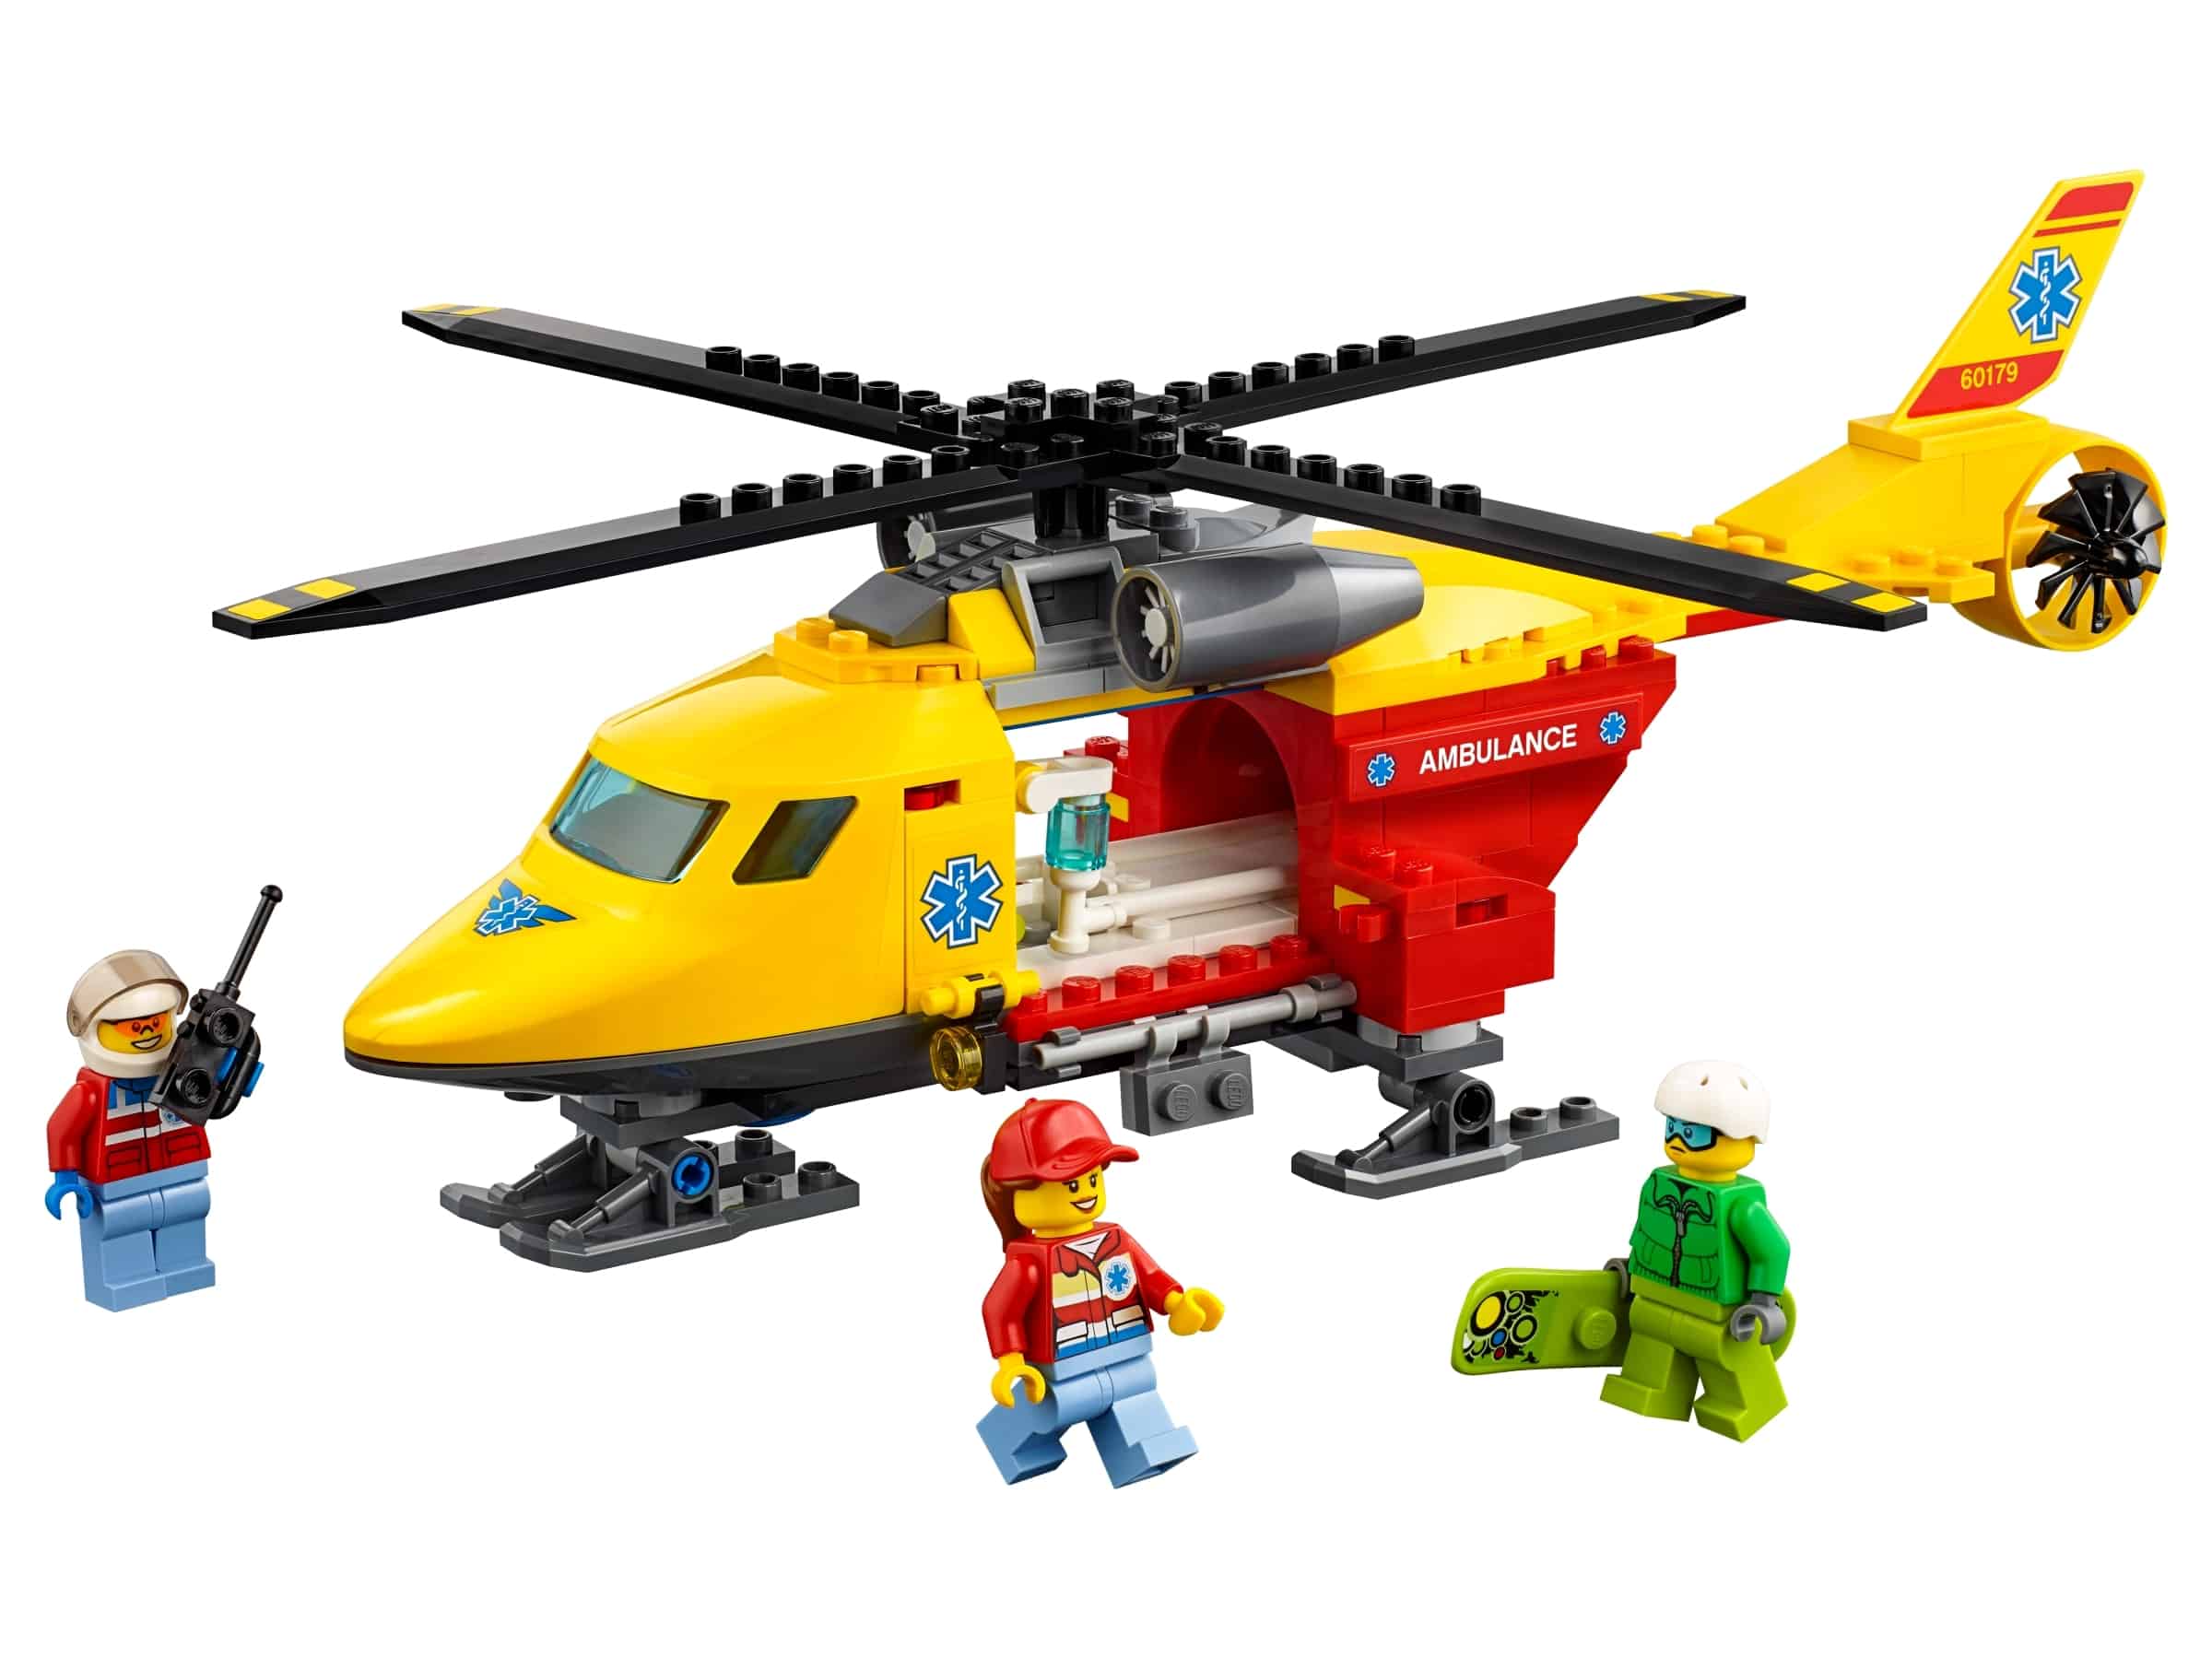 lego ambulancehelikopter 60179